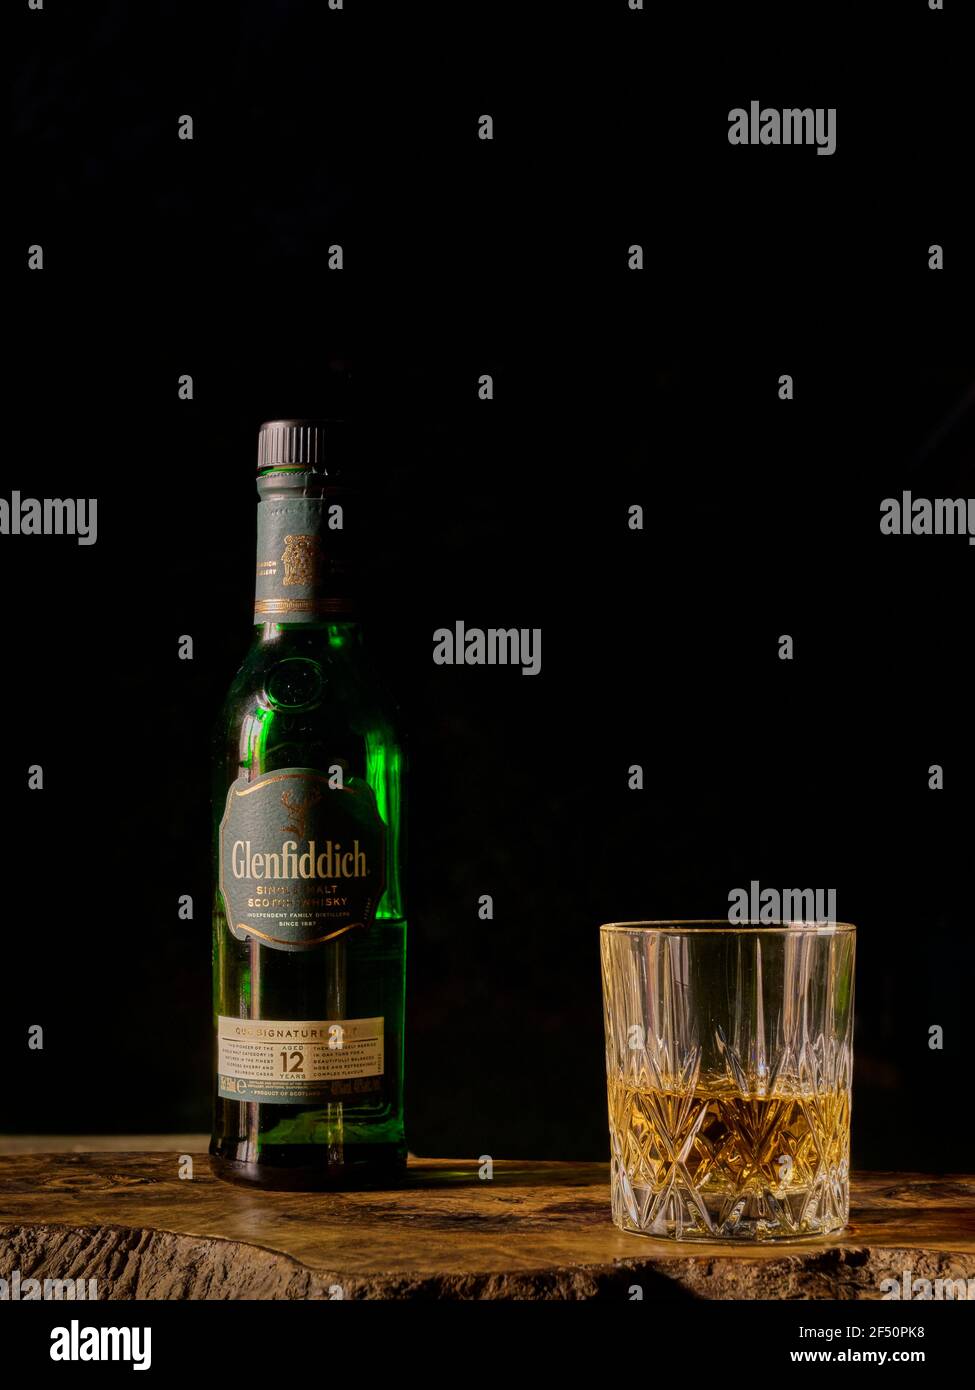 Glenfiddich Scotch Whisky Flasche und Glas halb gefüllt auf einem Olivenholzbrett vor einem dunkelschwarzen Hintergrund Stockfoto